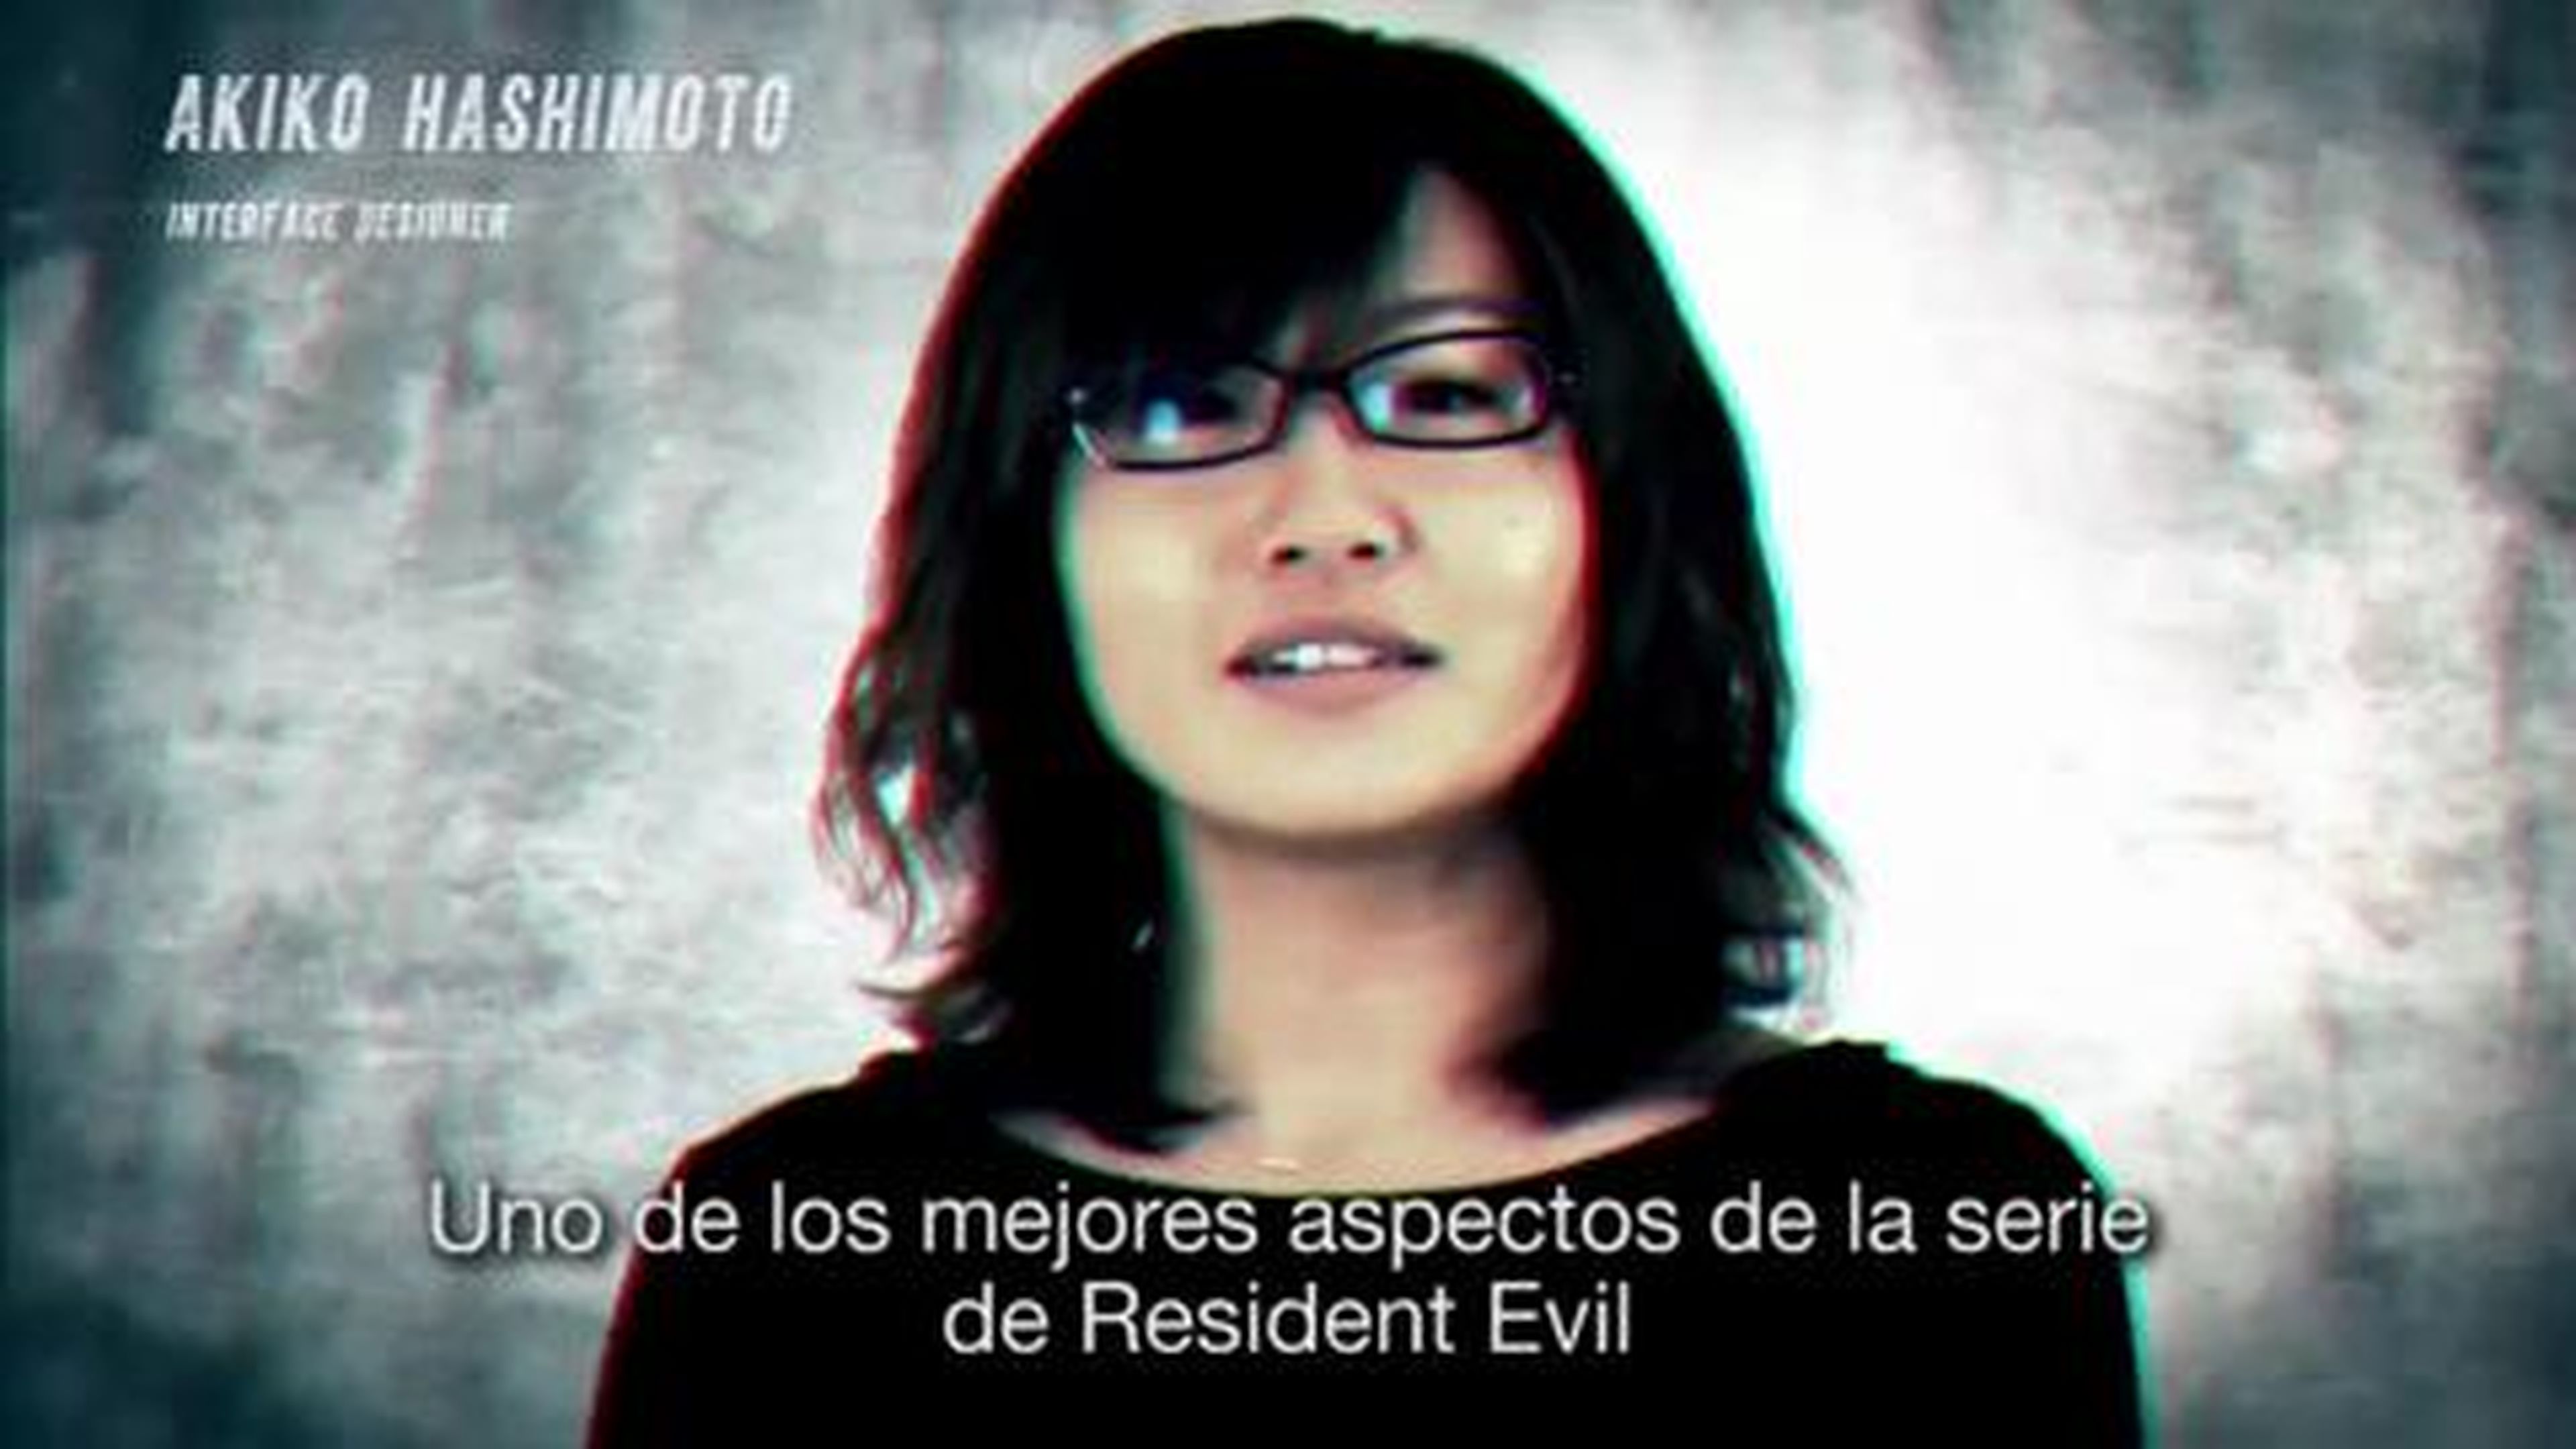 Diario de Desarrollo 1 de Resident Evil Revelations, Herencia y Terror en HobbyConsolas.com